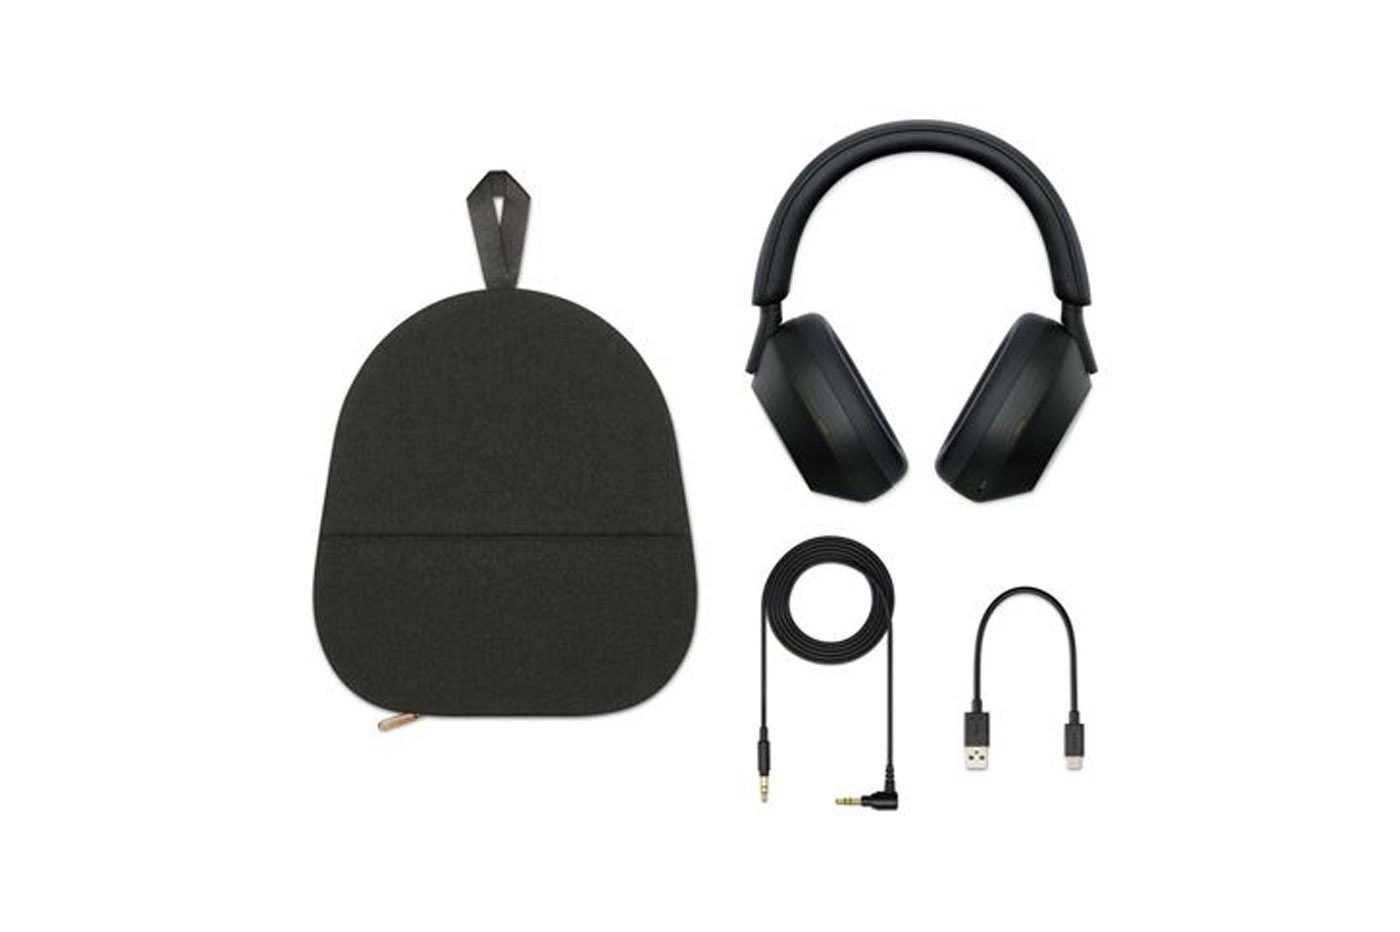 Promo Sony : Des casques audio à réduction de bruit à des prix